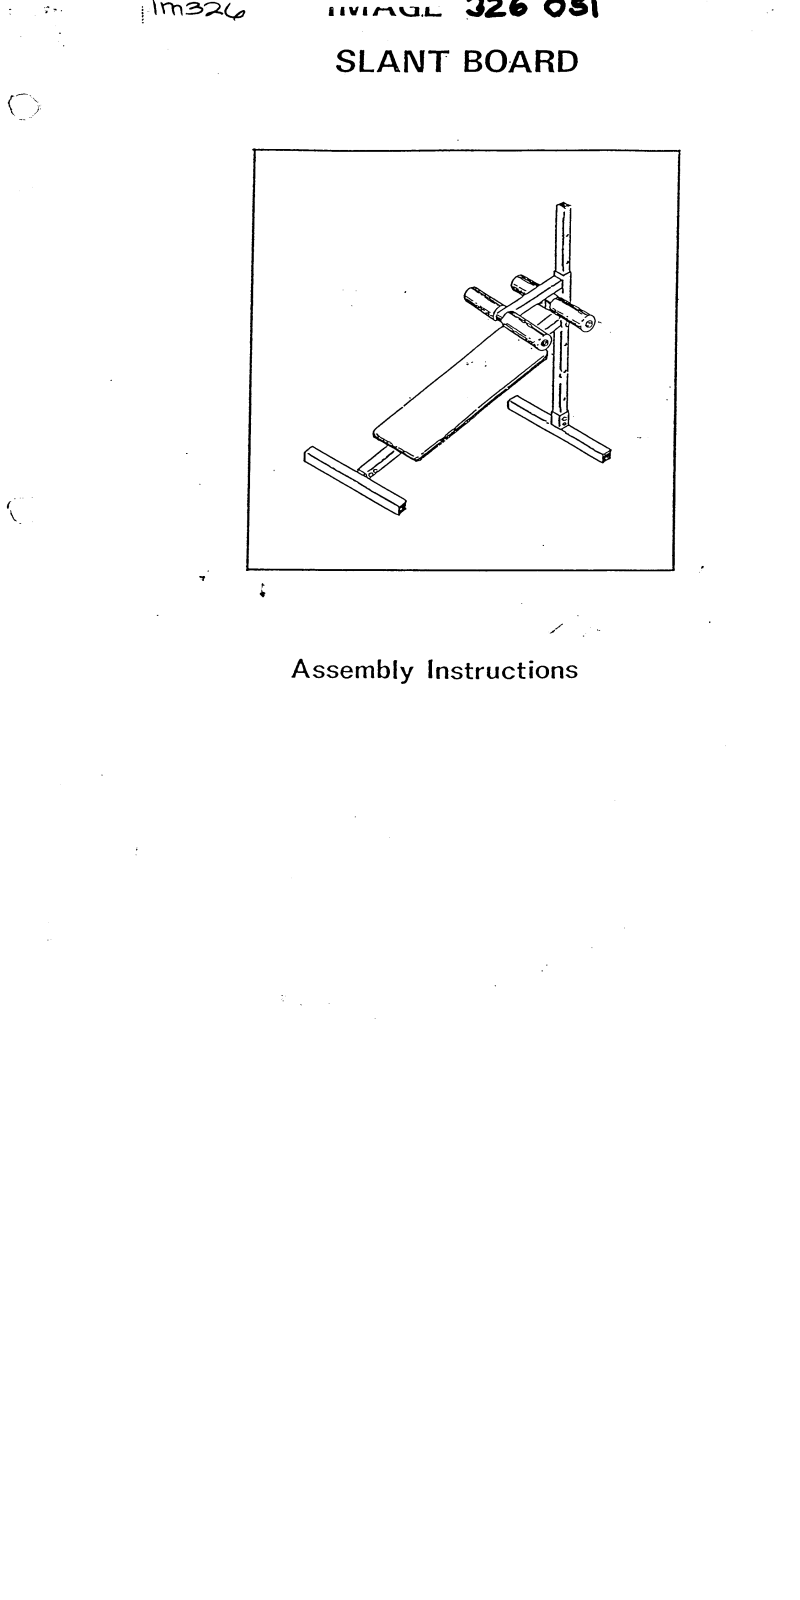 Image IM3260 Assembly Instruction